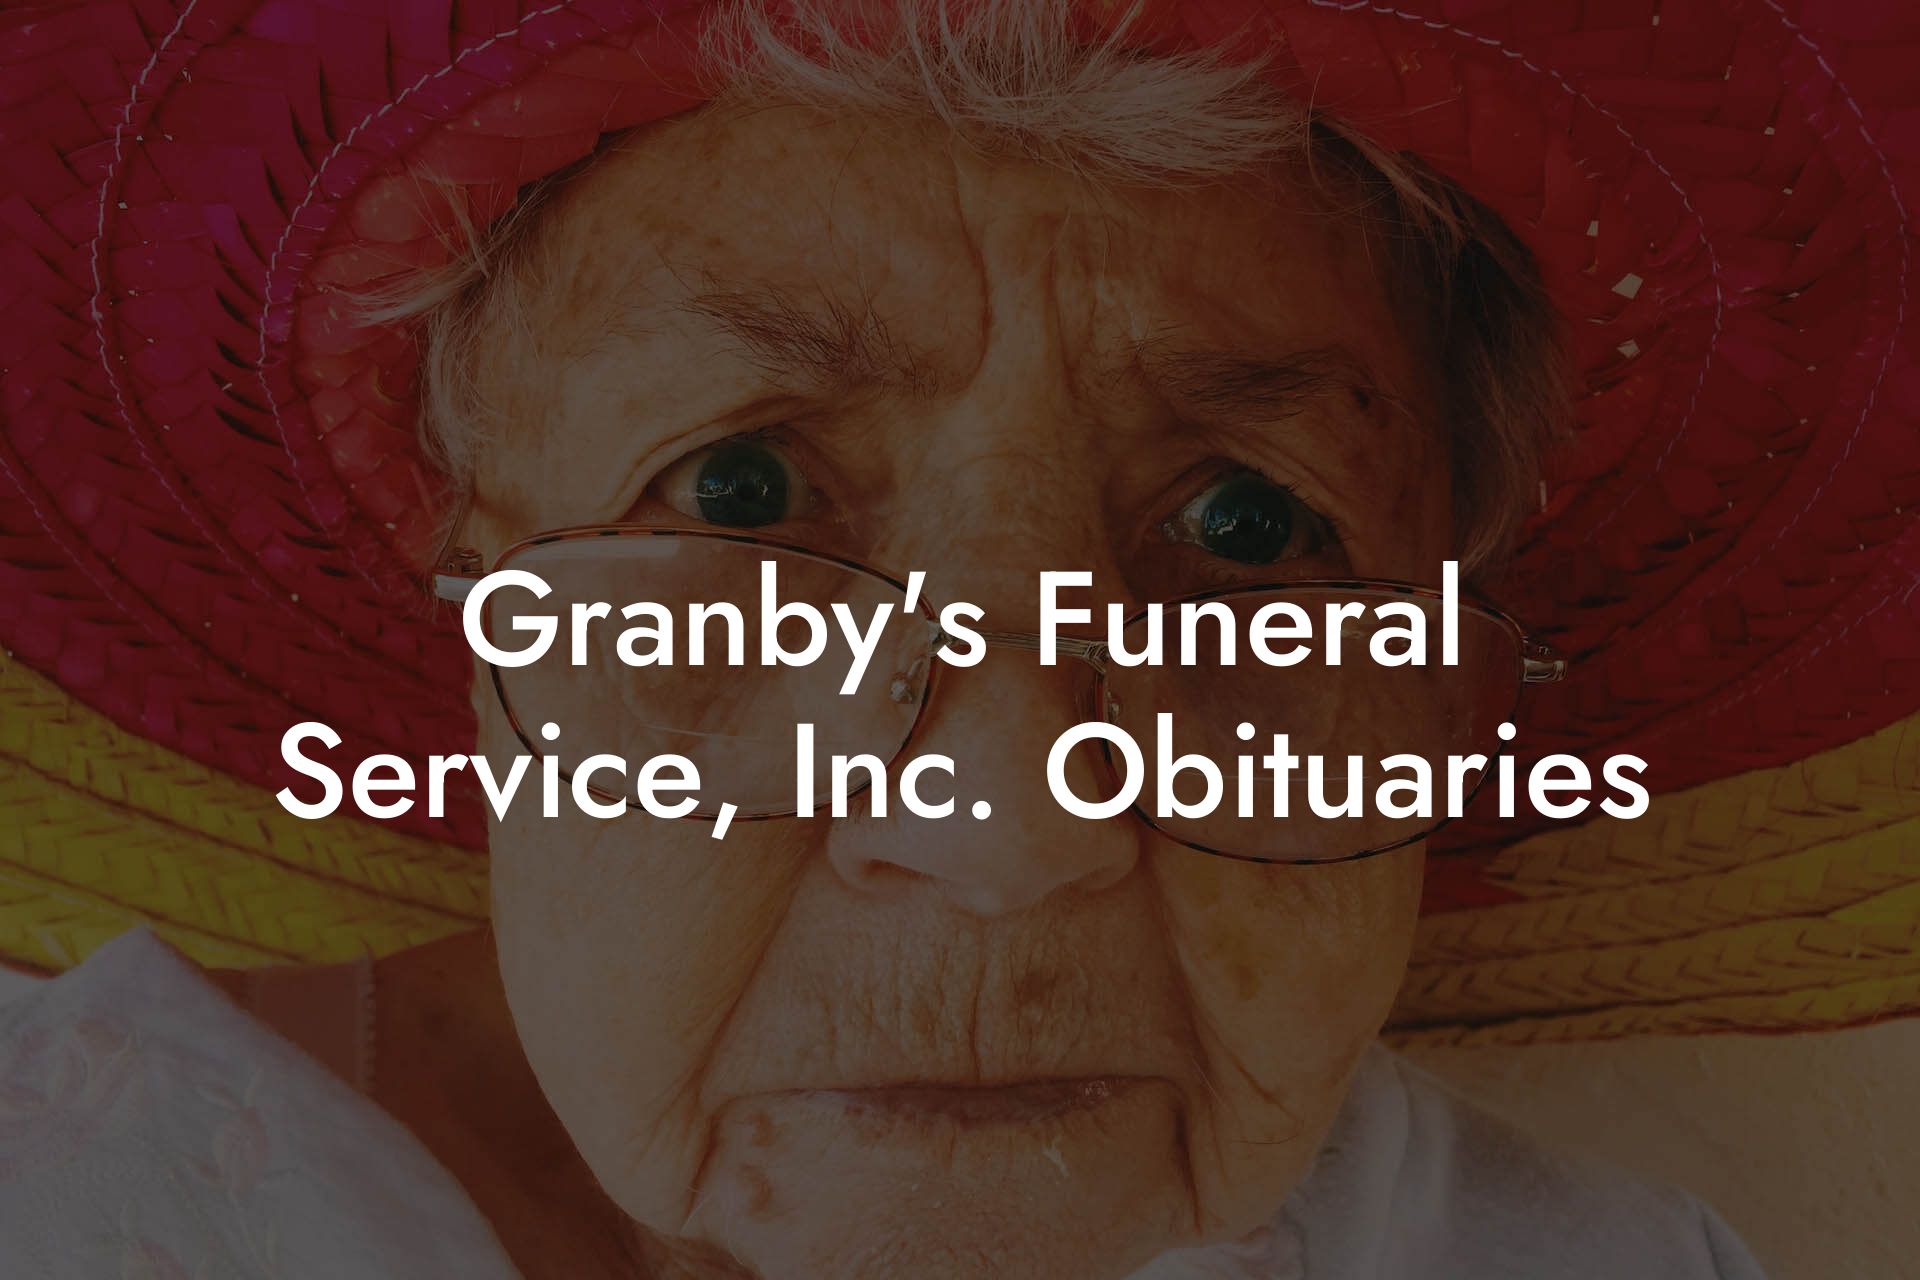 Granby's Funeral Service, Inc. Obituaries